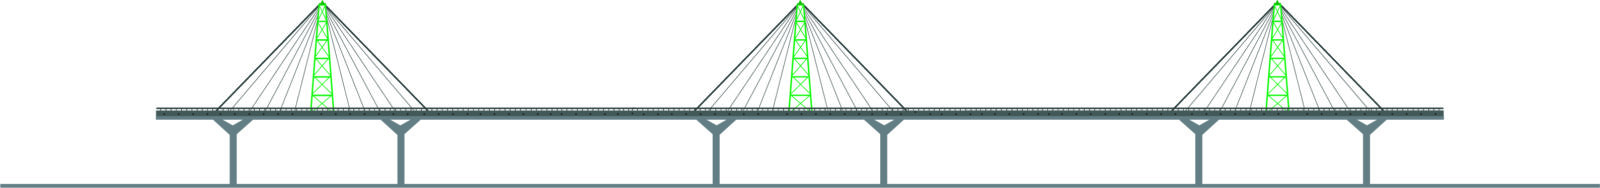 bridge4-4